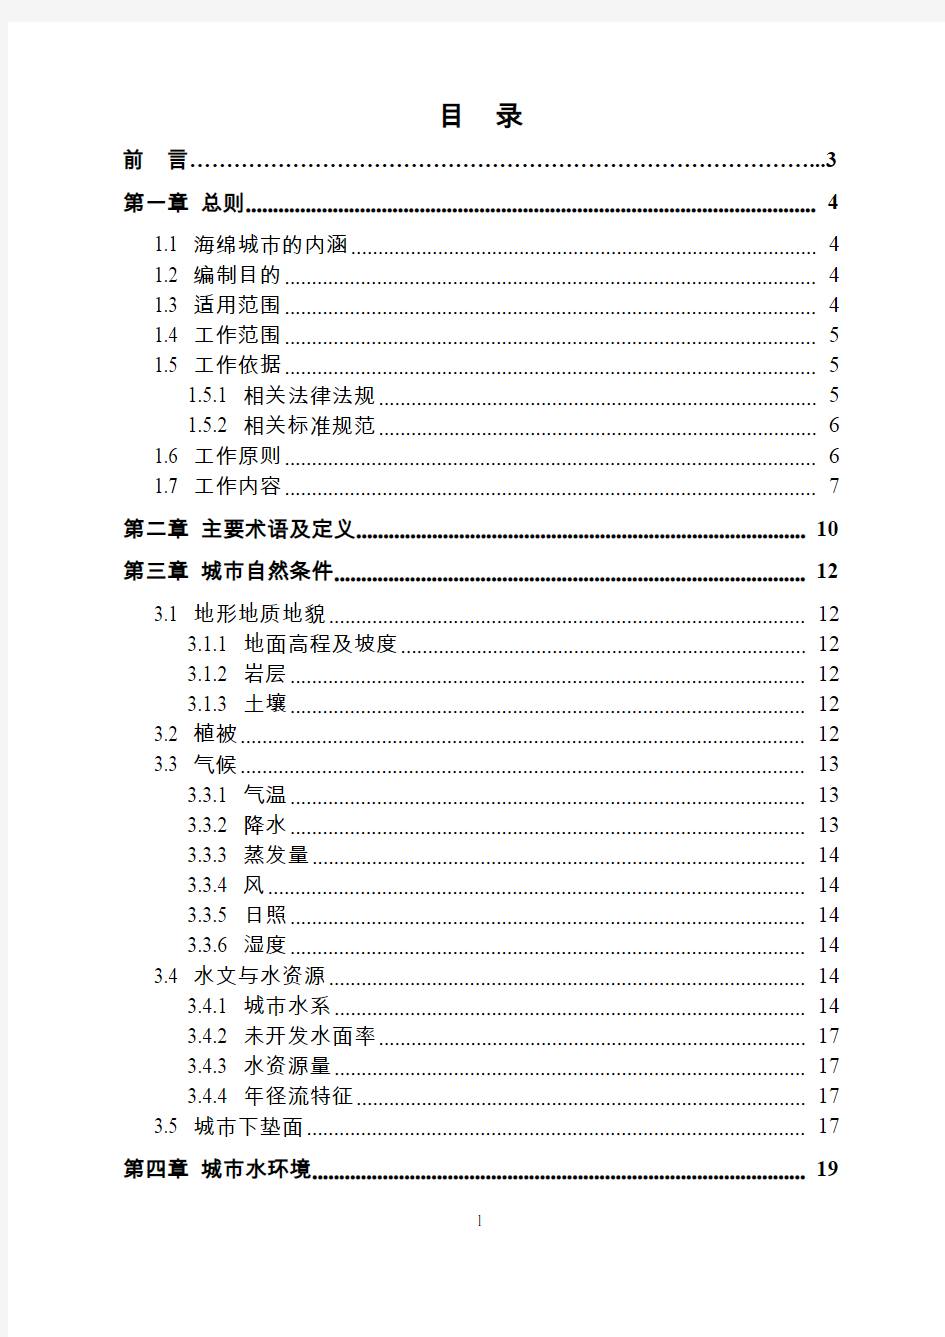 重庆市海绵城市建设基本资料调查工作指南(试行)